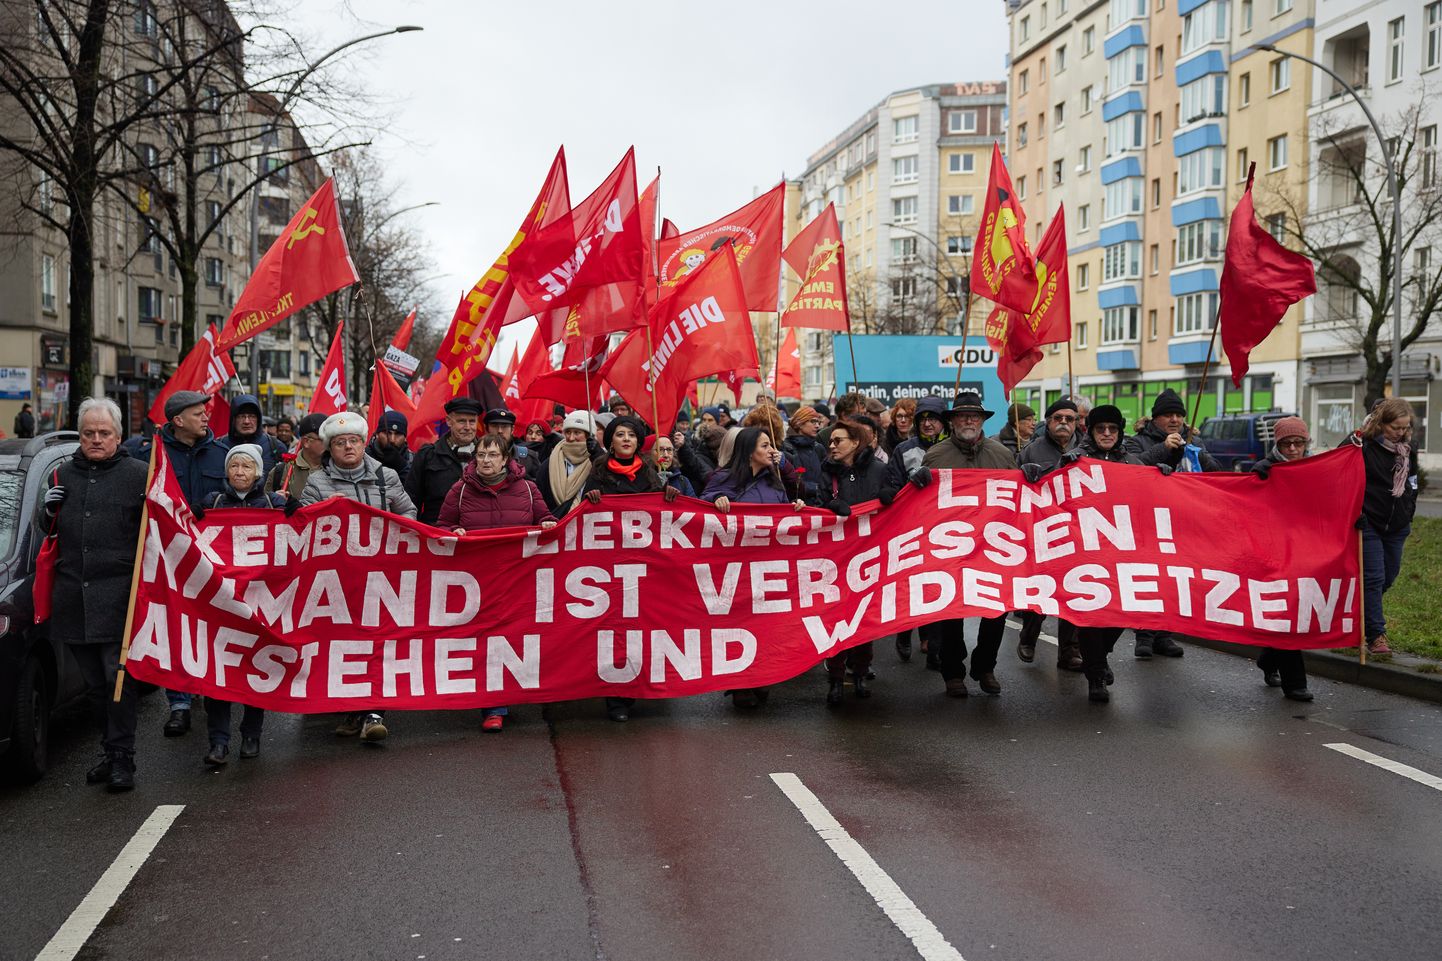 Надпись на плакате: "Люксембург, Либкнехт, Ленин. Никто не забыт! Восстаньте и сопротивляйтесь!"